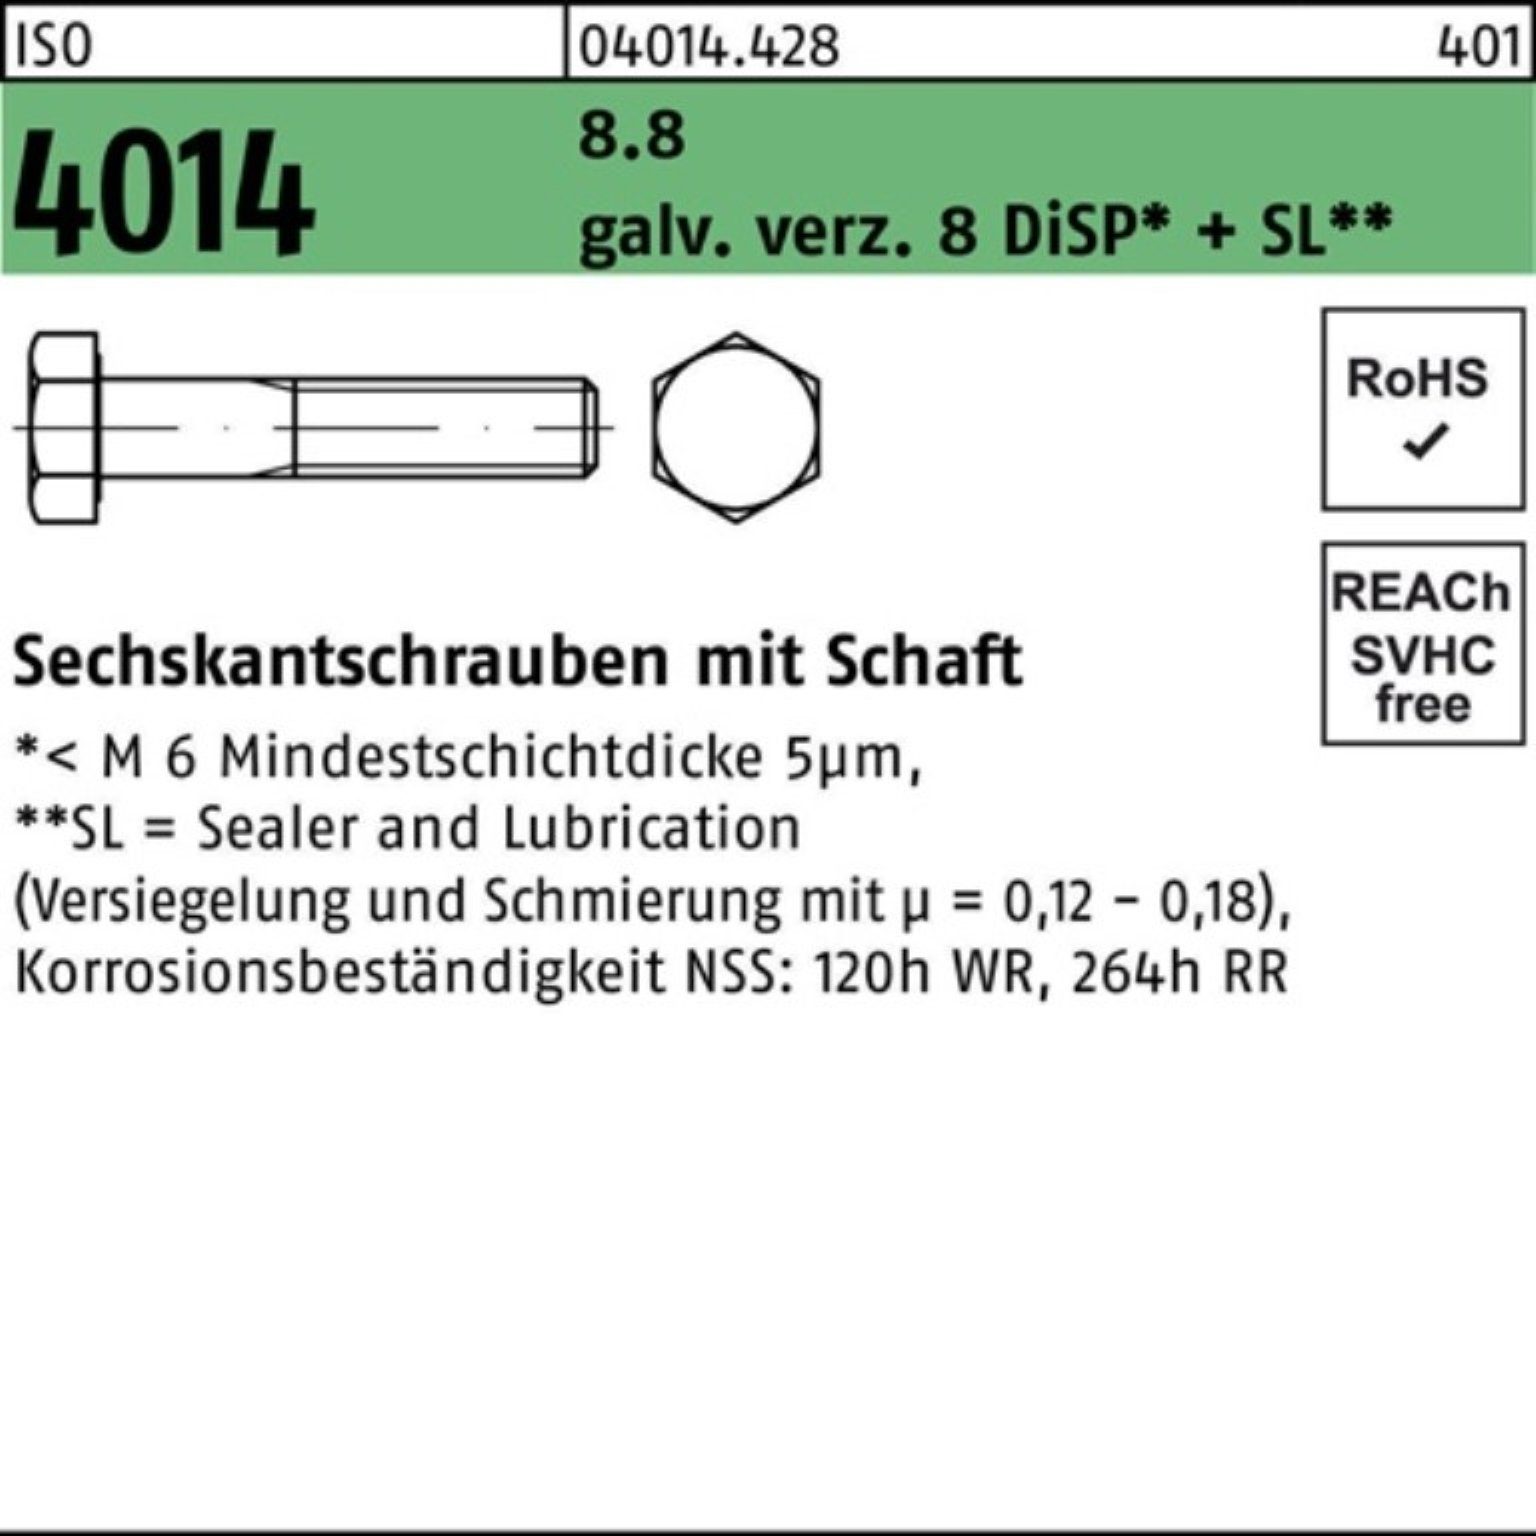 ISO Pack Bufab Sechskantschraube M20x100 4014 galv.verz. 8 100er Sechskantschraube 8.8 Schaft